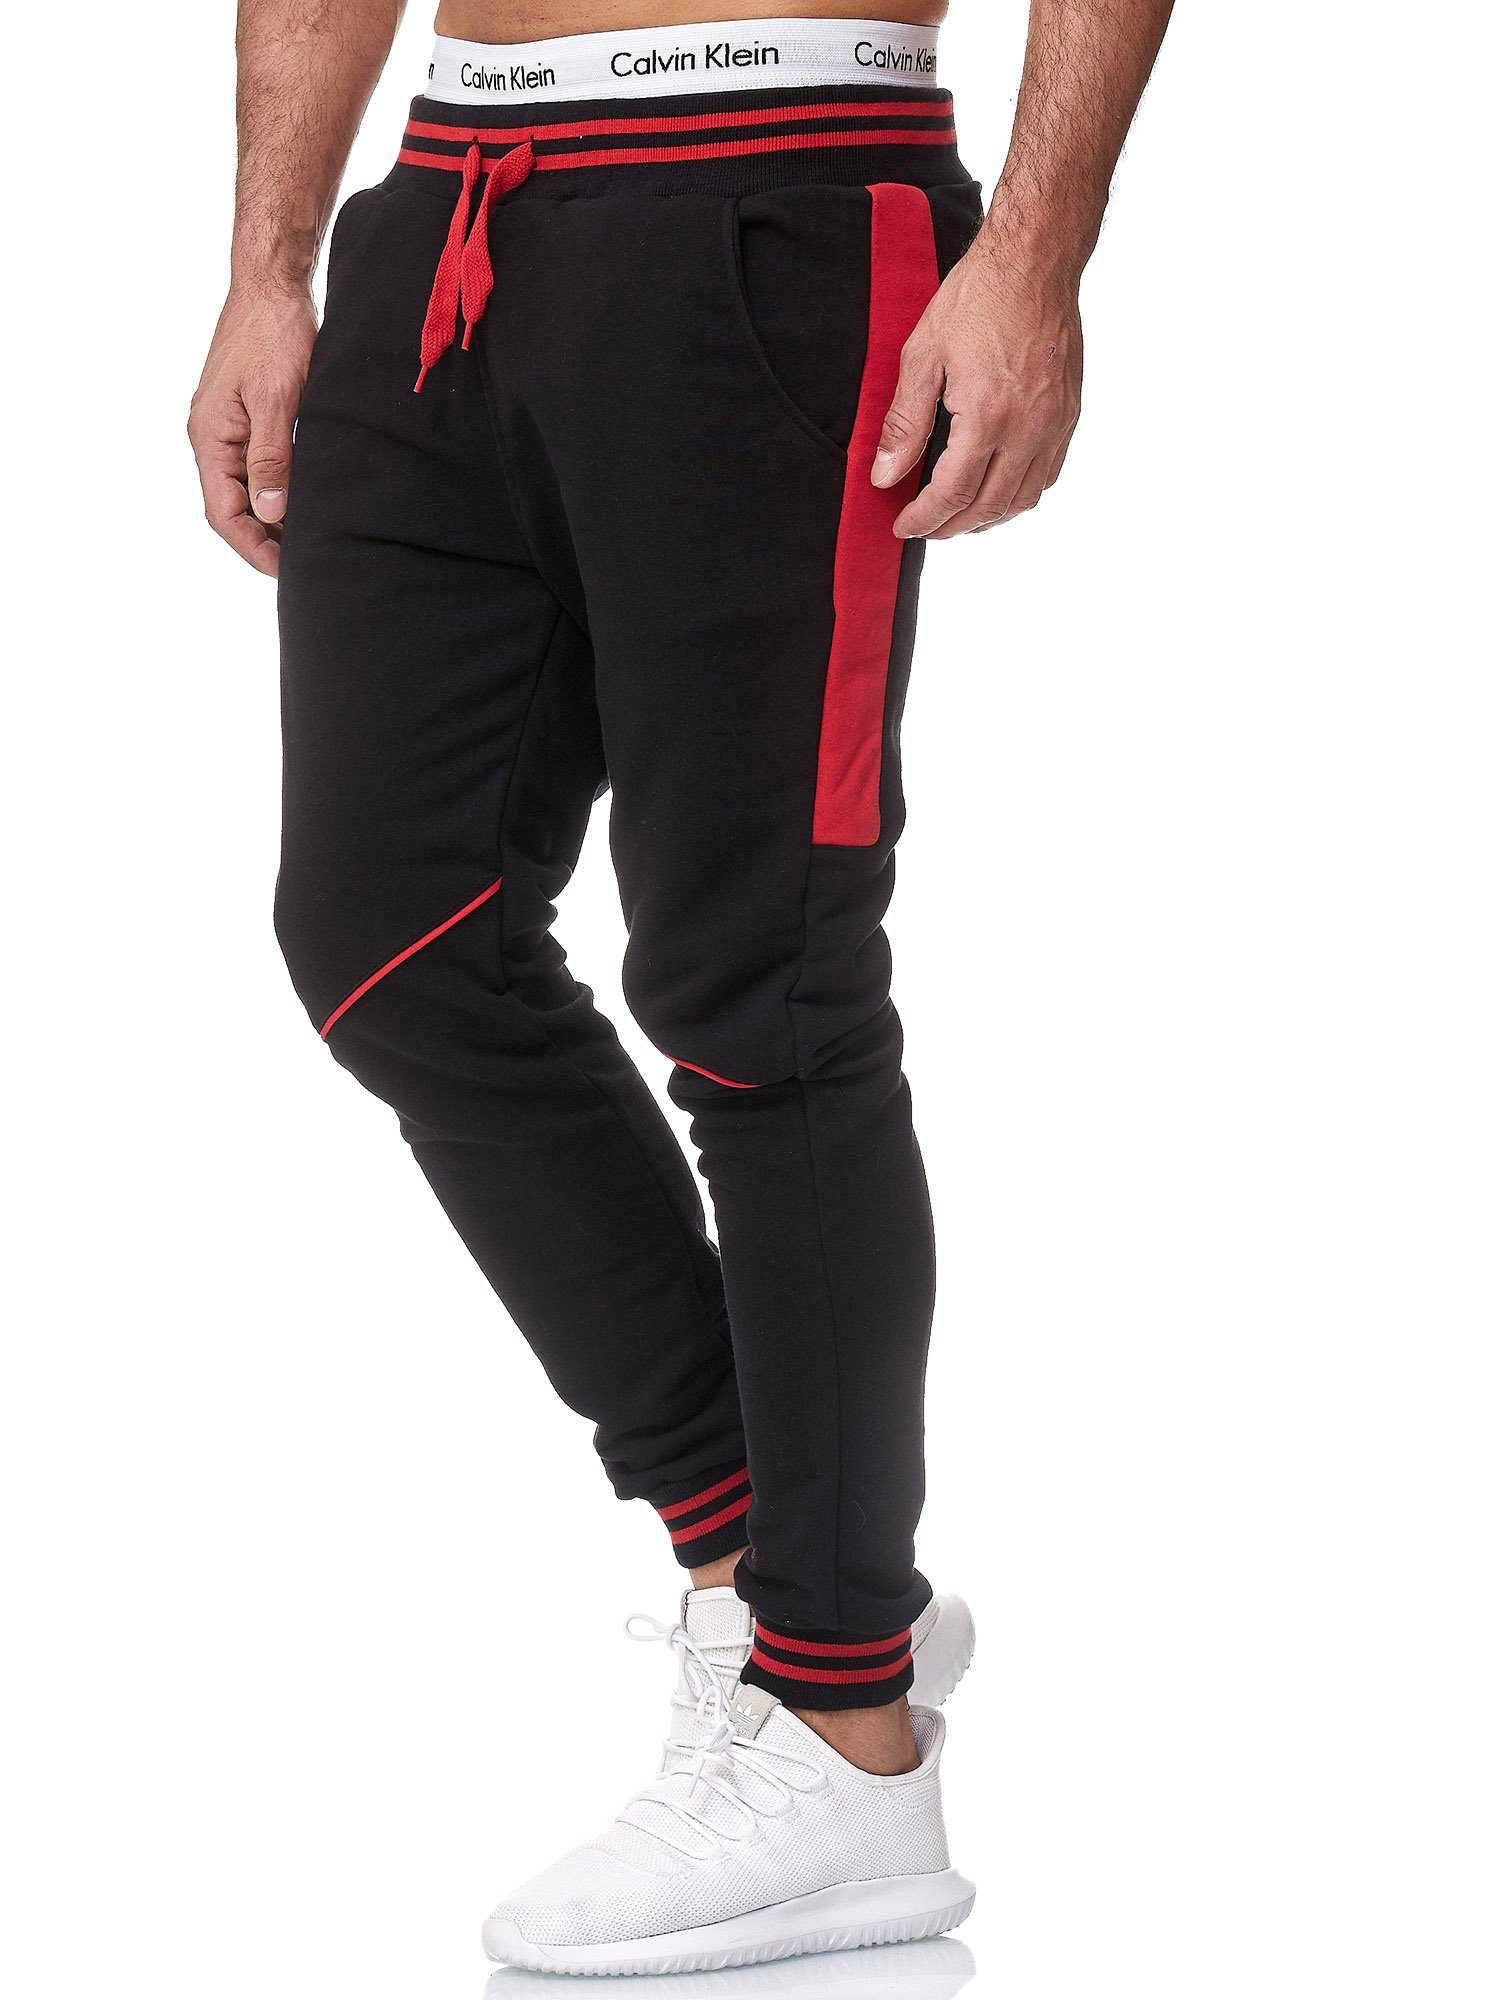 Code47 Jogginghose Code47 Herren Jogging Hose Jogger Streetwear Sporthose Modell 1317 (1-tlg) Schwarz Rot